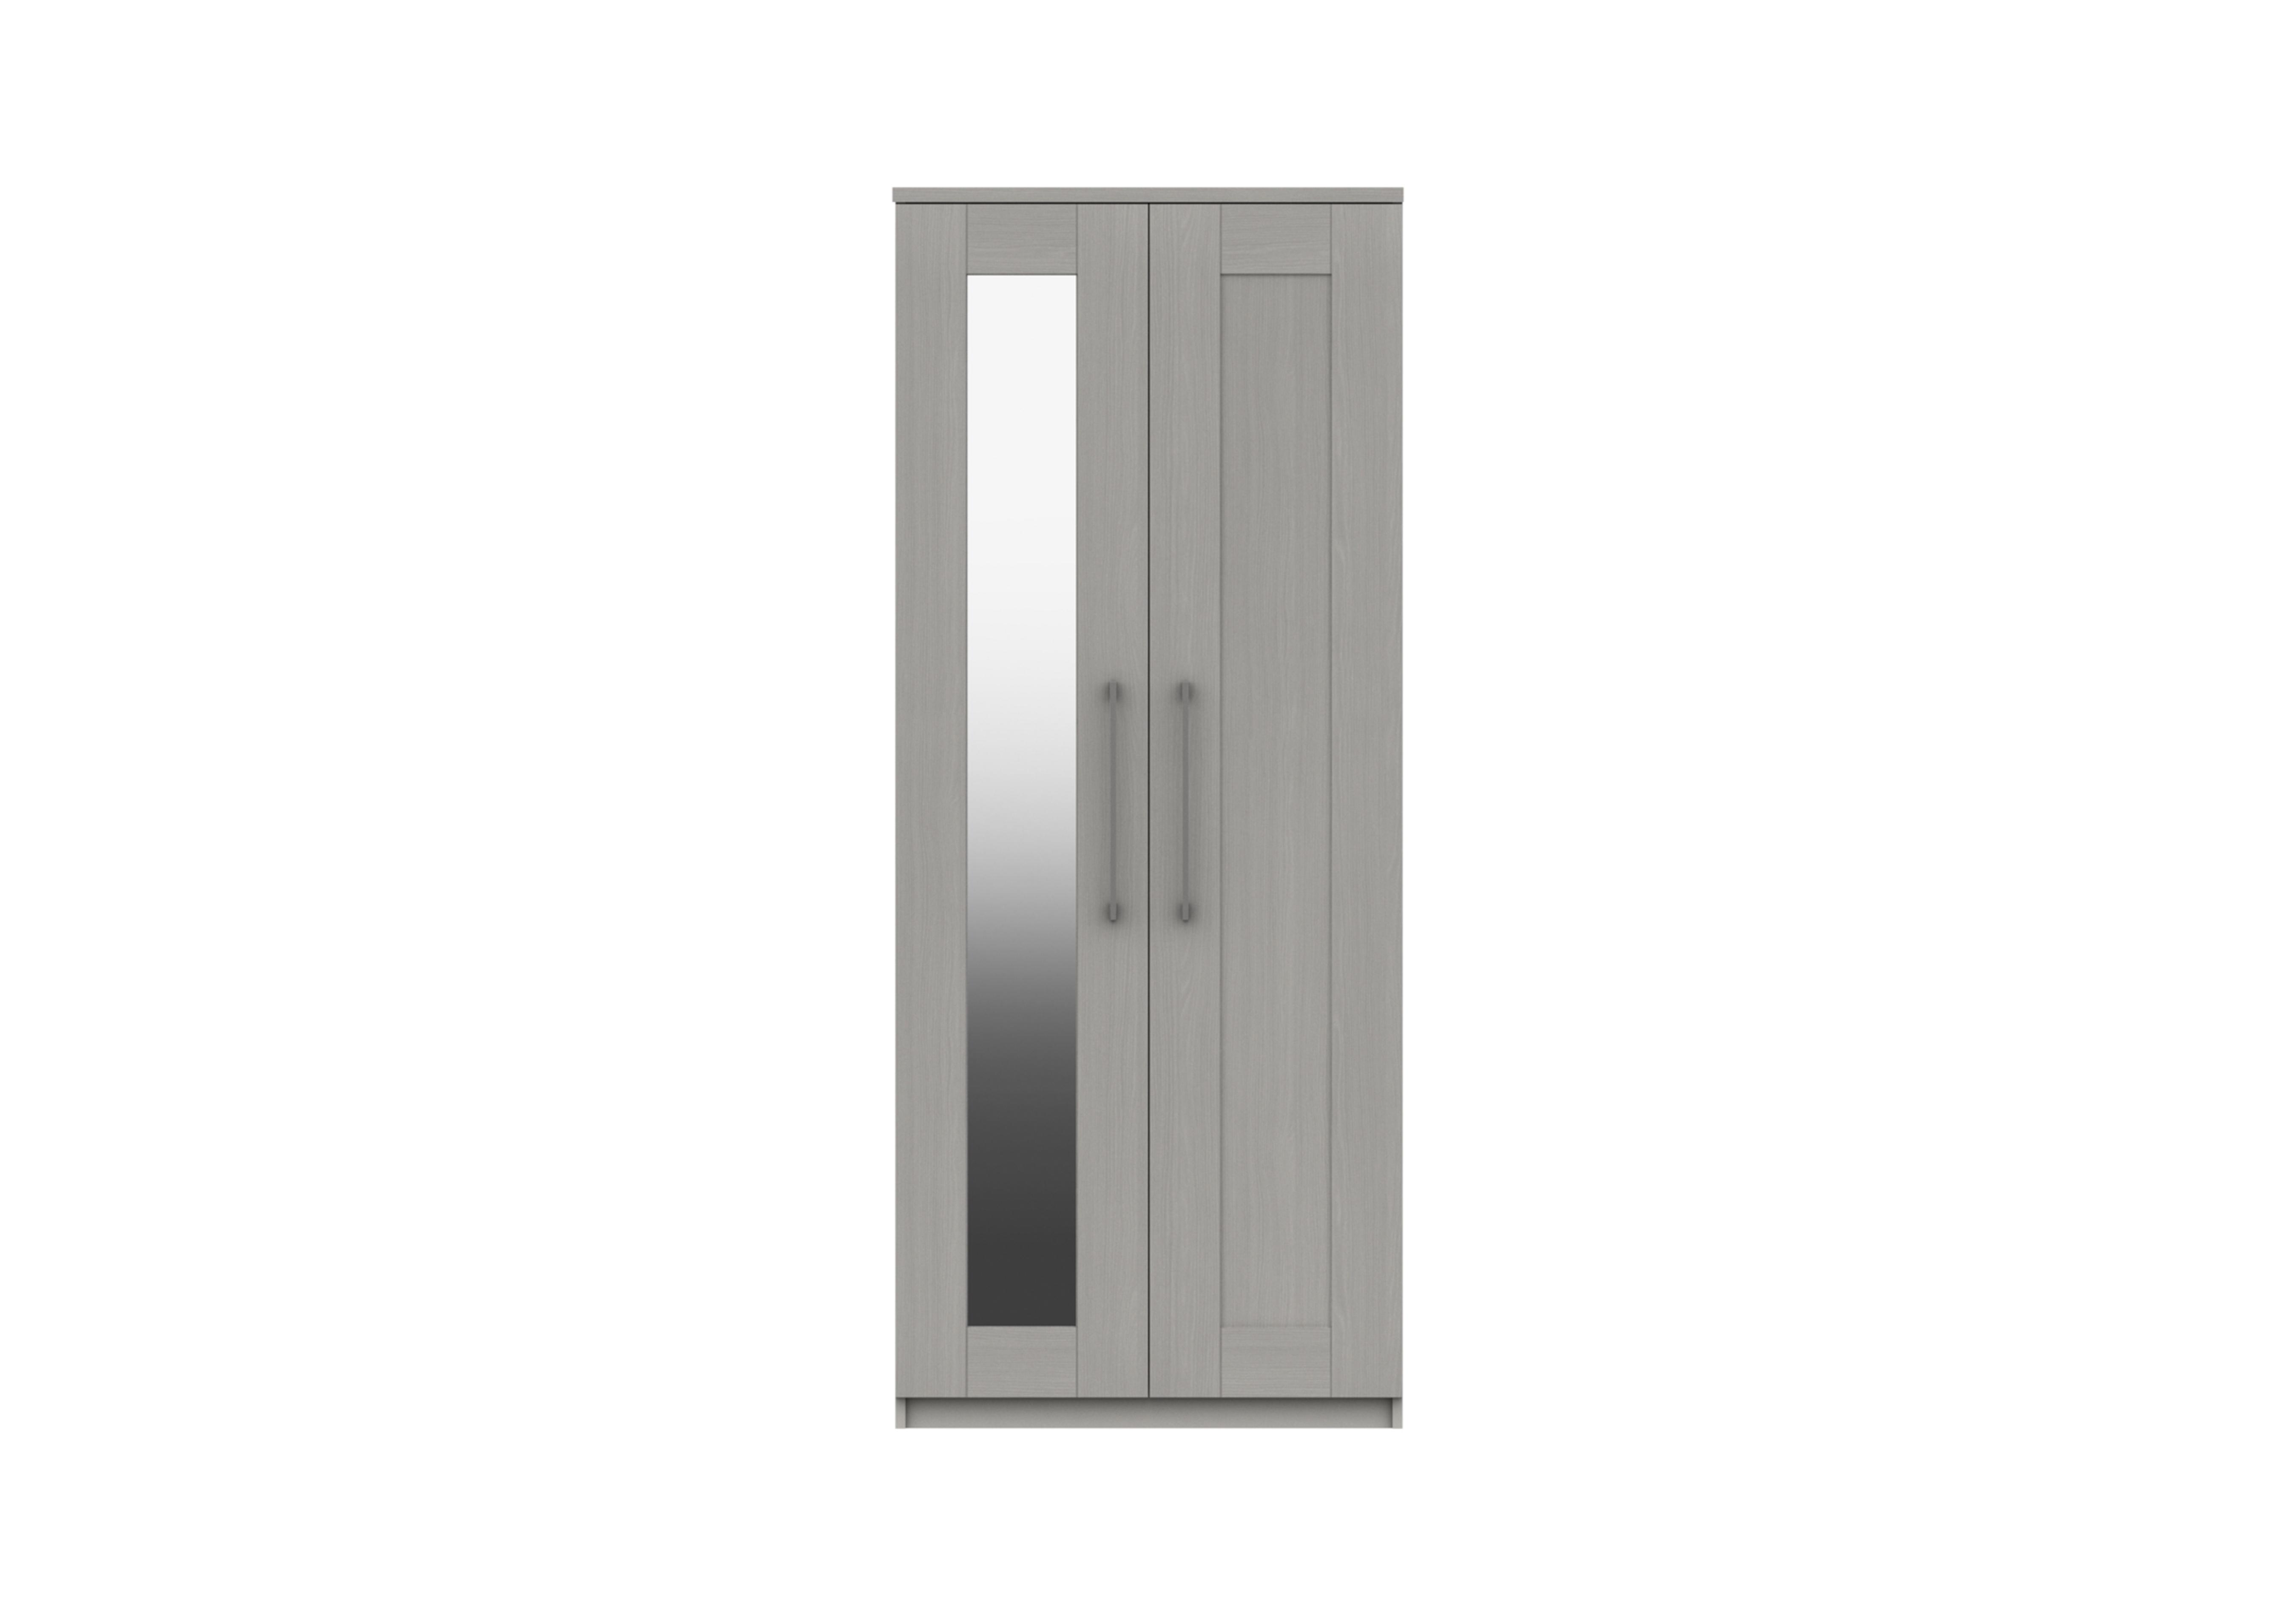 Fenchurch 2 Door Wardrobe with Mirror in Light Grey on Furniture Village